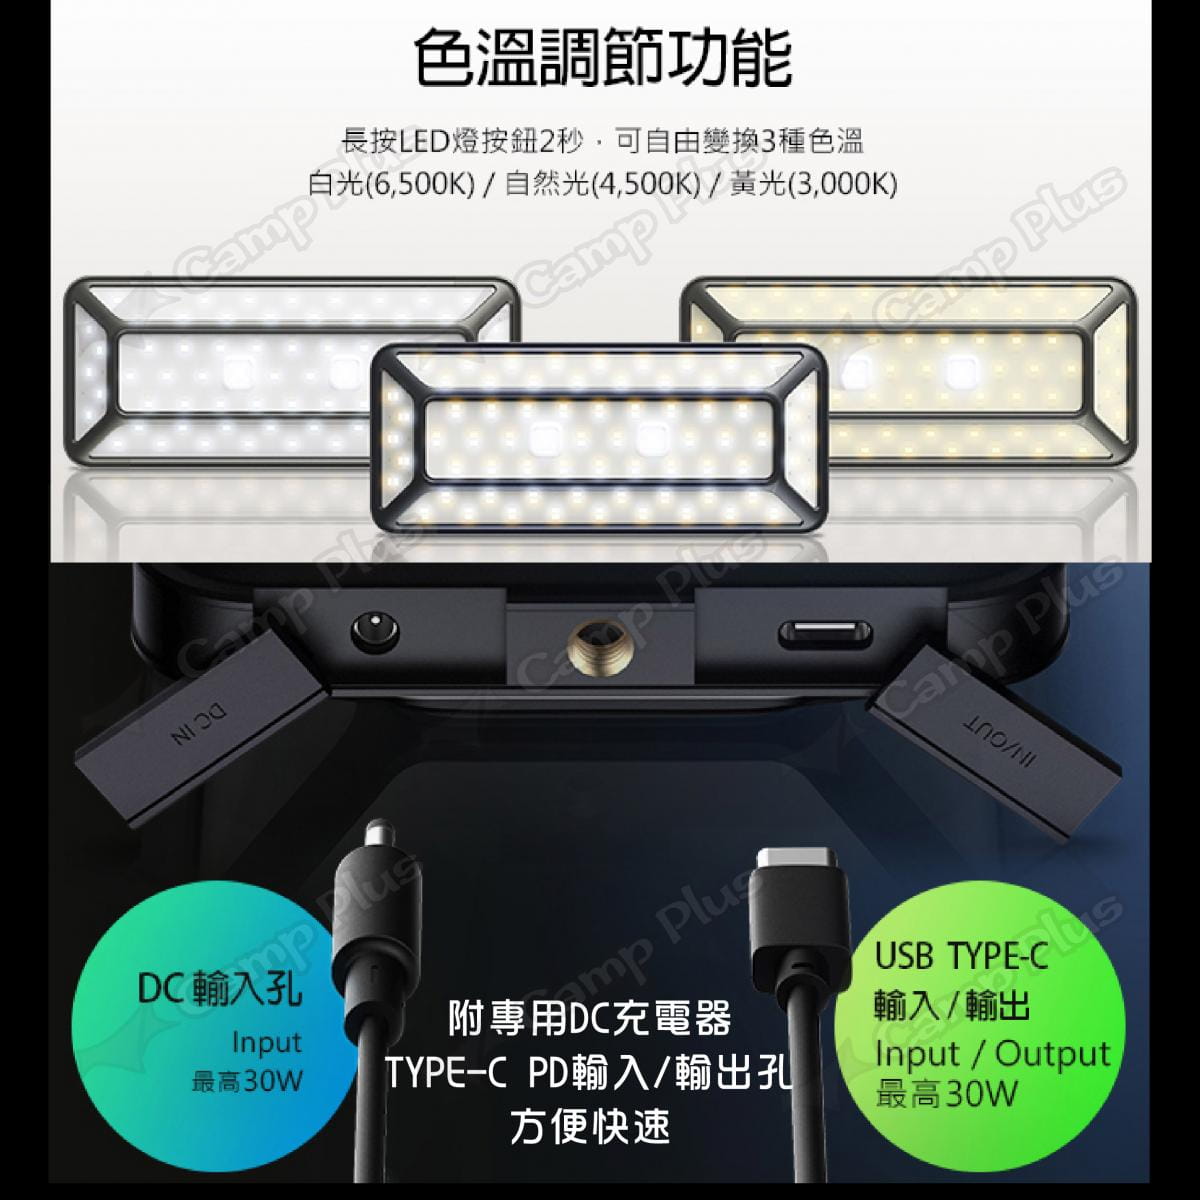 【N9 LUMENA】PRO五面廣角行動電源LED燈 (悠遊戶外) 4